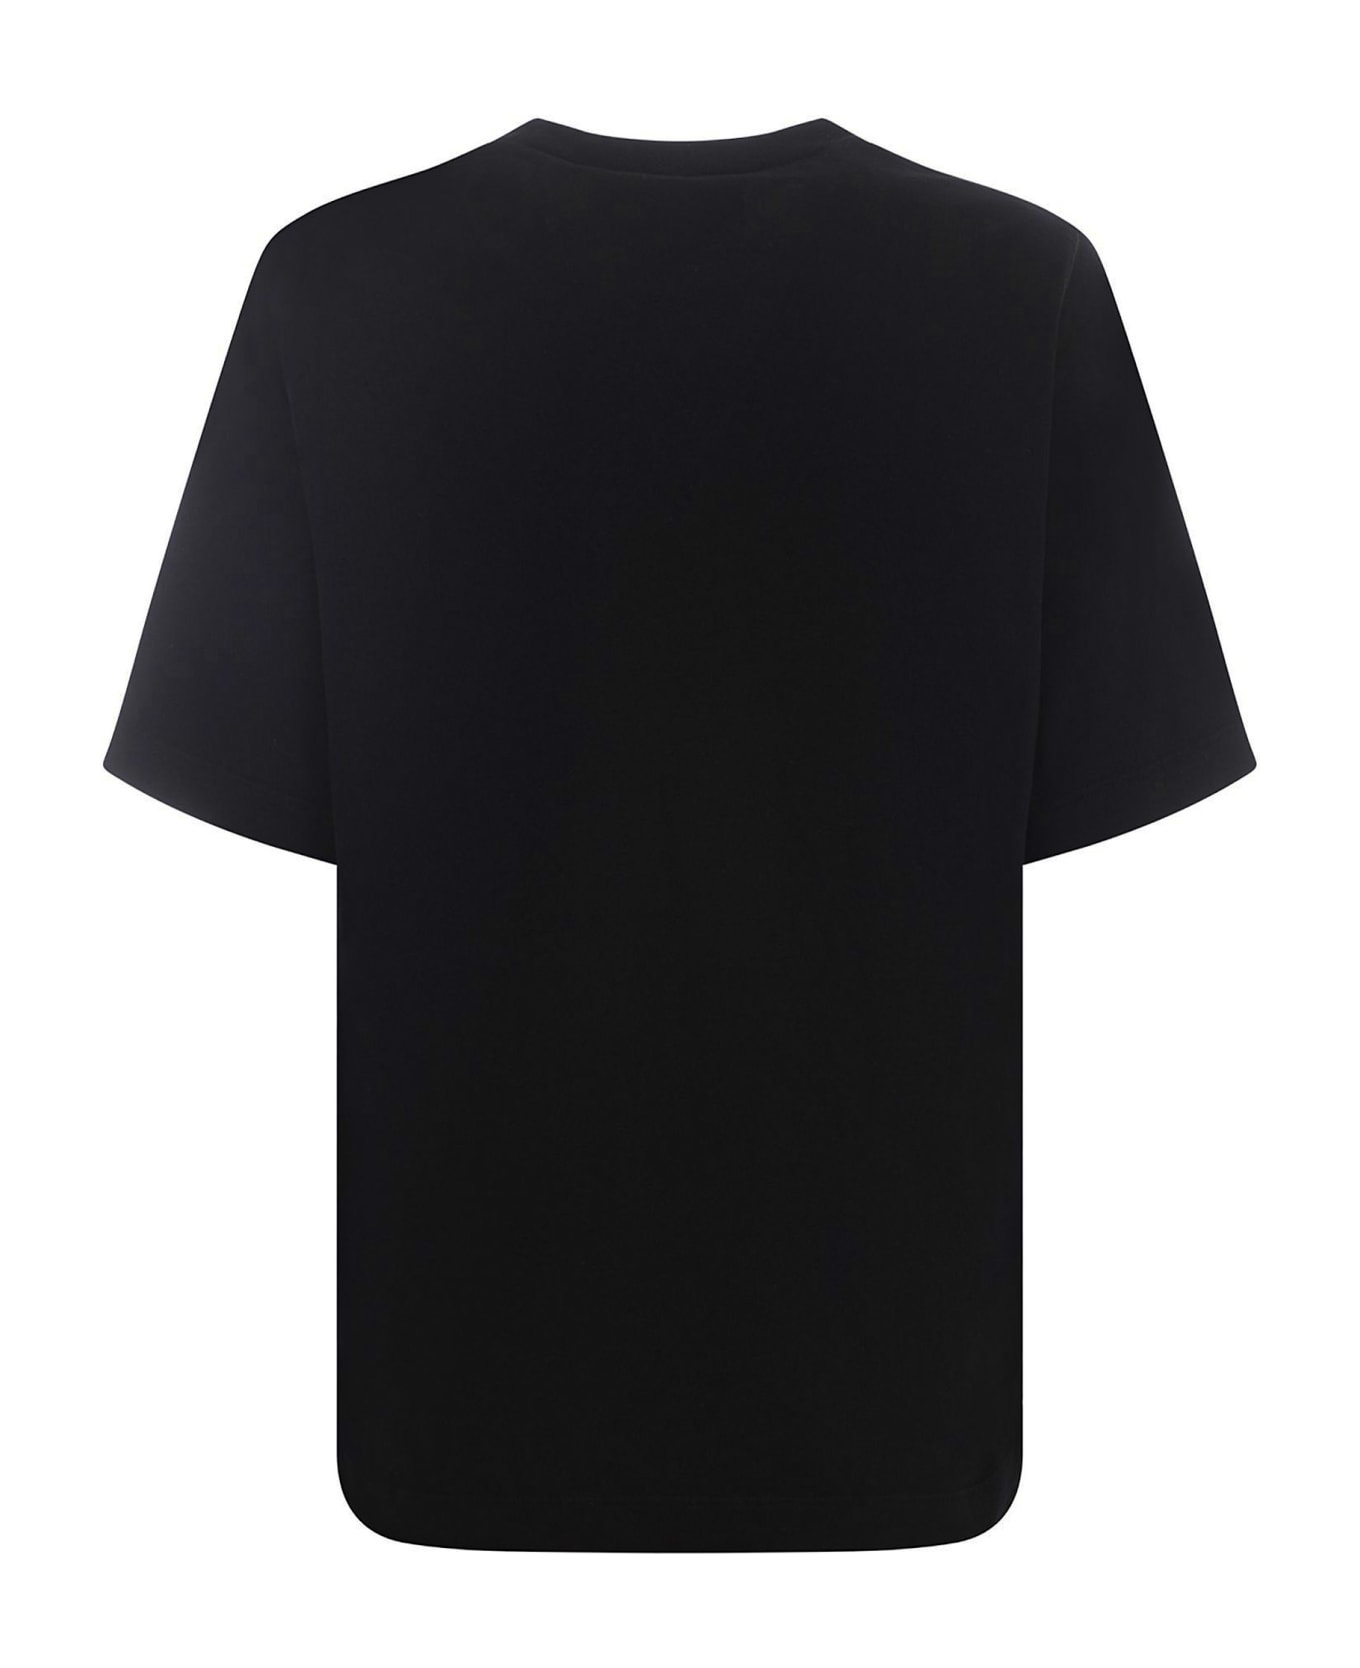 Dsquared2 Black Cotton T-shirt - C